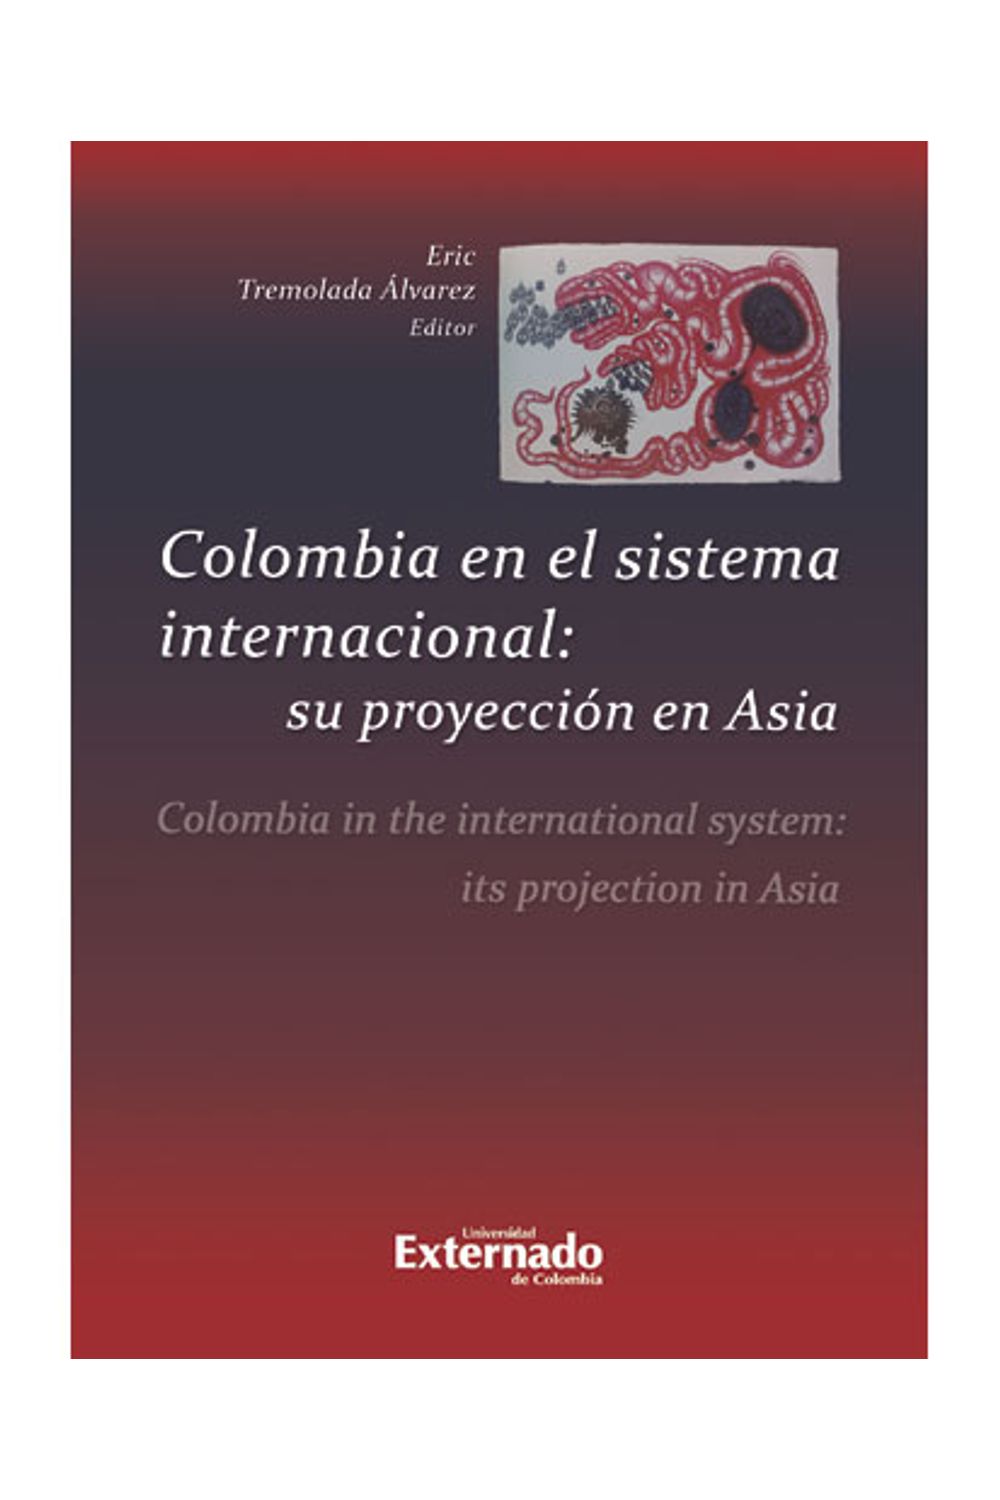 bm-colombia-en-el-sistema-internacional-su-proyeccion-en-asia-u-externado-de-colombia-9789587721331